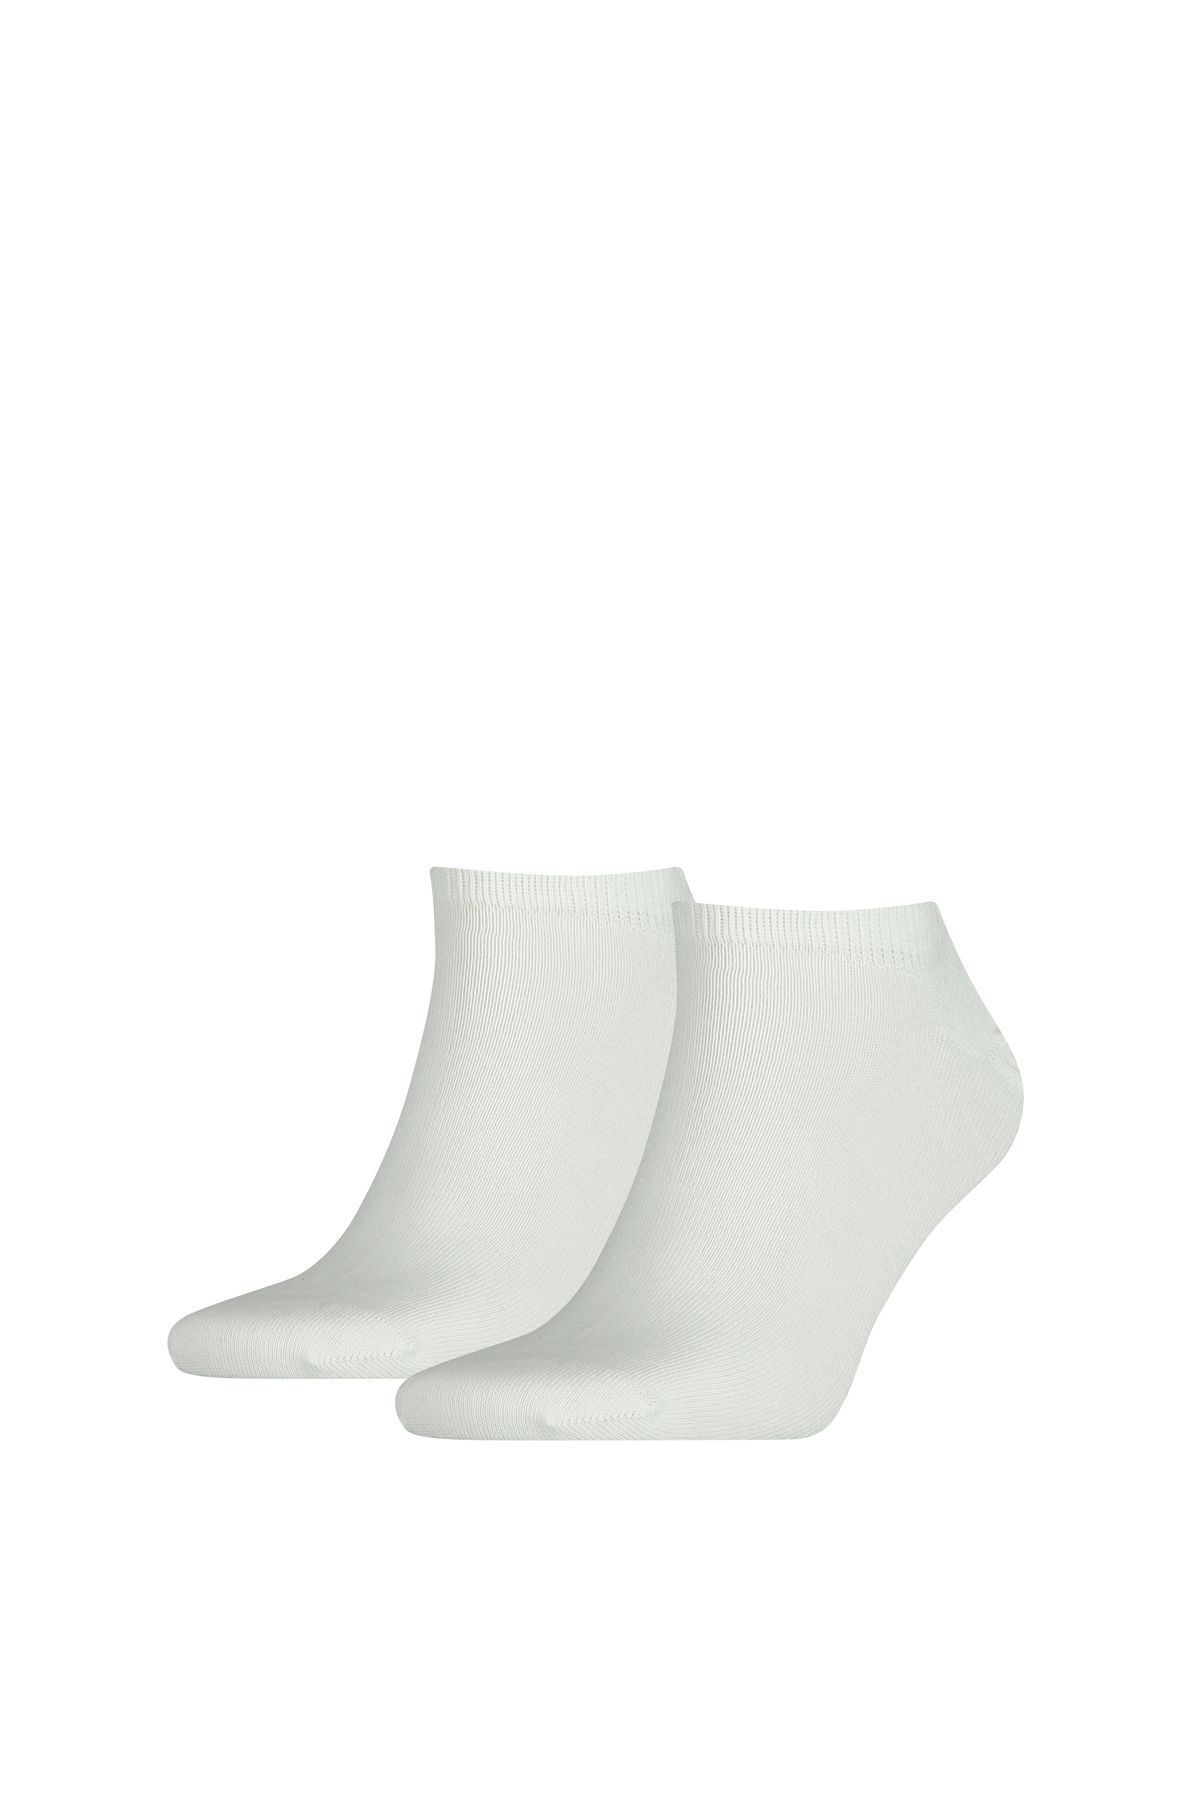 Tommy Hilfiger Erkek Marka Logolu Pamukllu Kısa Günlük Kullanıma Uygun Beyaz Çorap 09A3423001-300